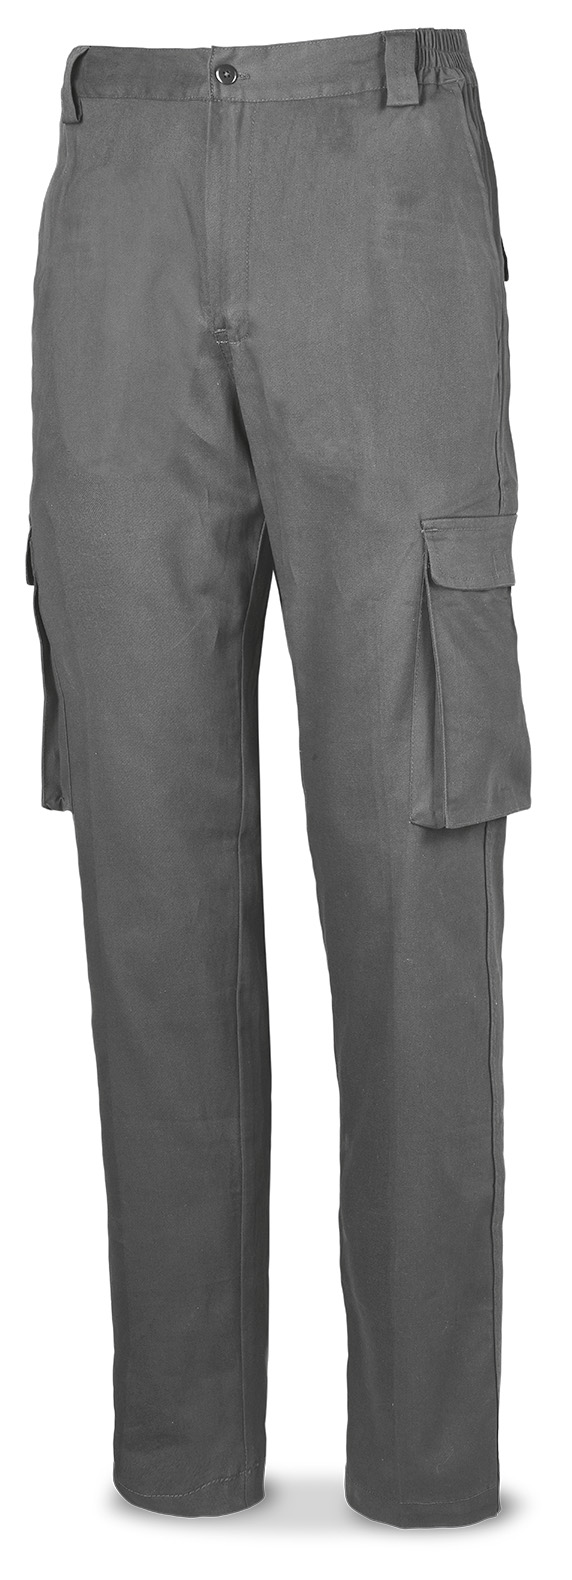 588-PBSG Vetements de travail laboral  Série Casual Pantalon de base STRETCH